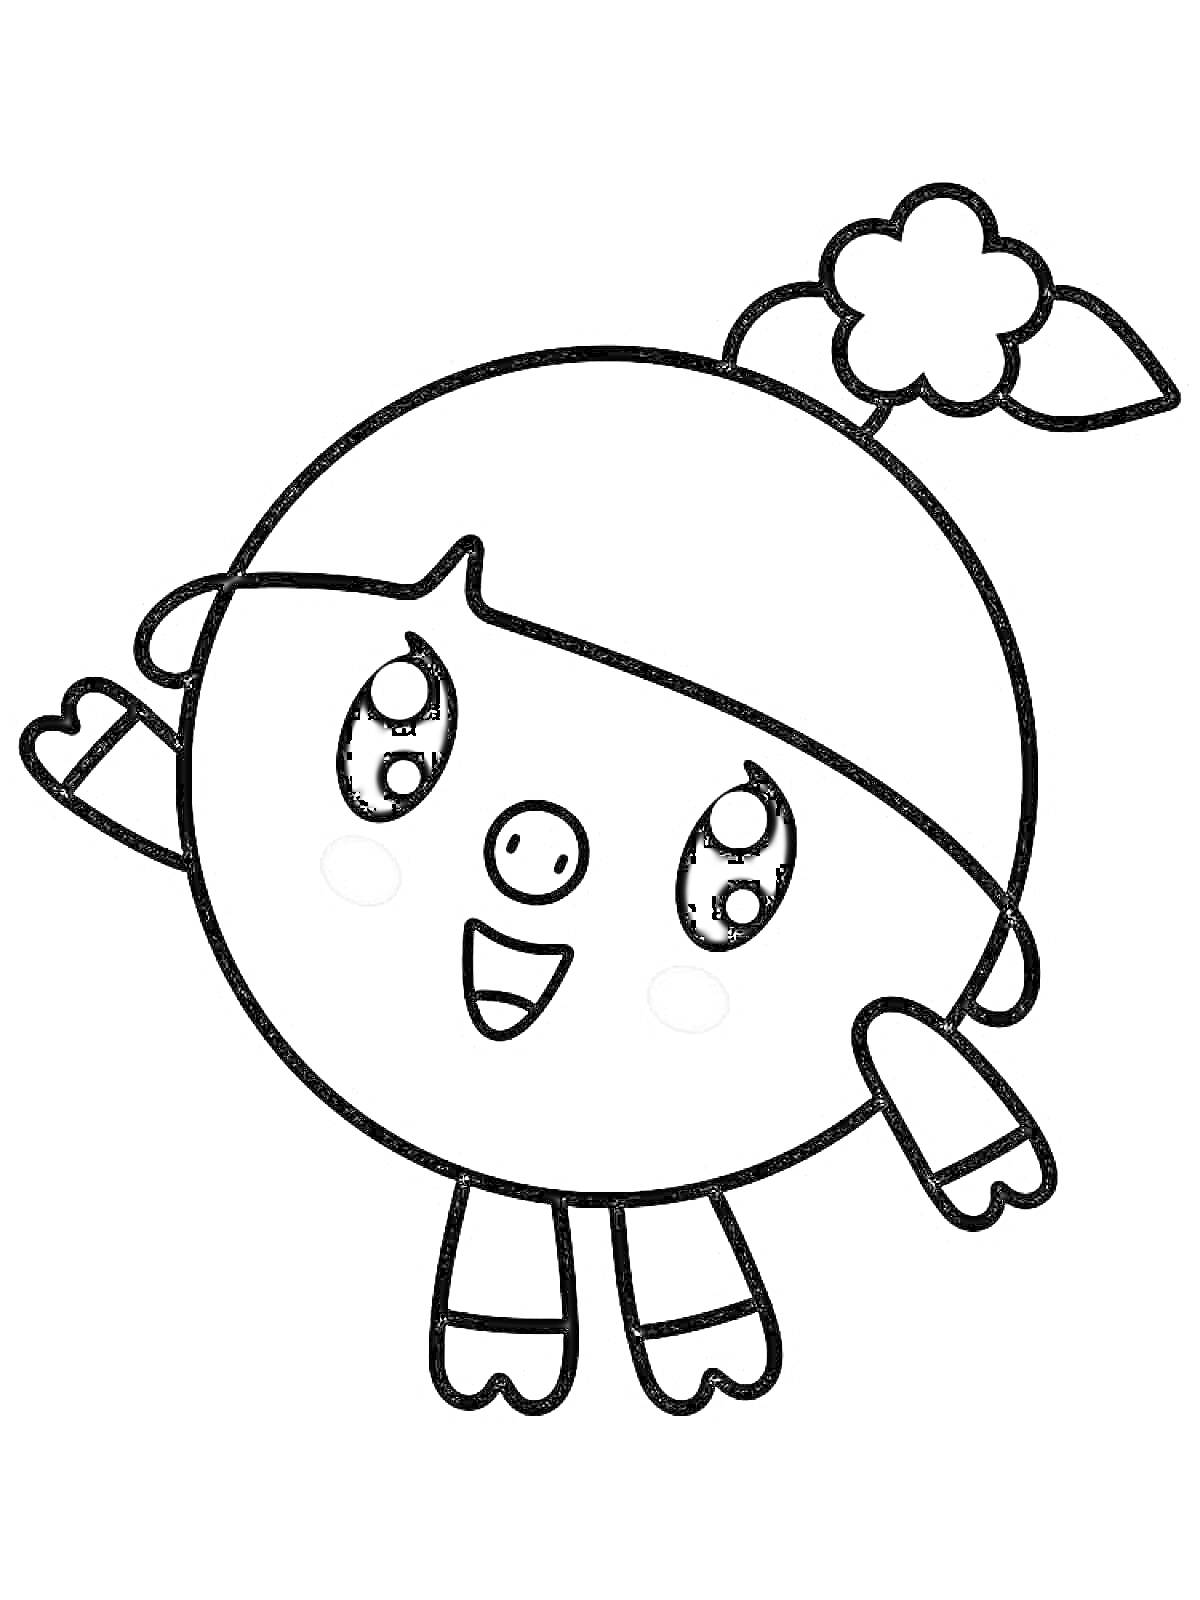 Раскраска Персонаж Малышарики с хвостиком и цветком, поднятая рука